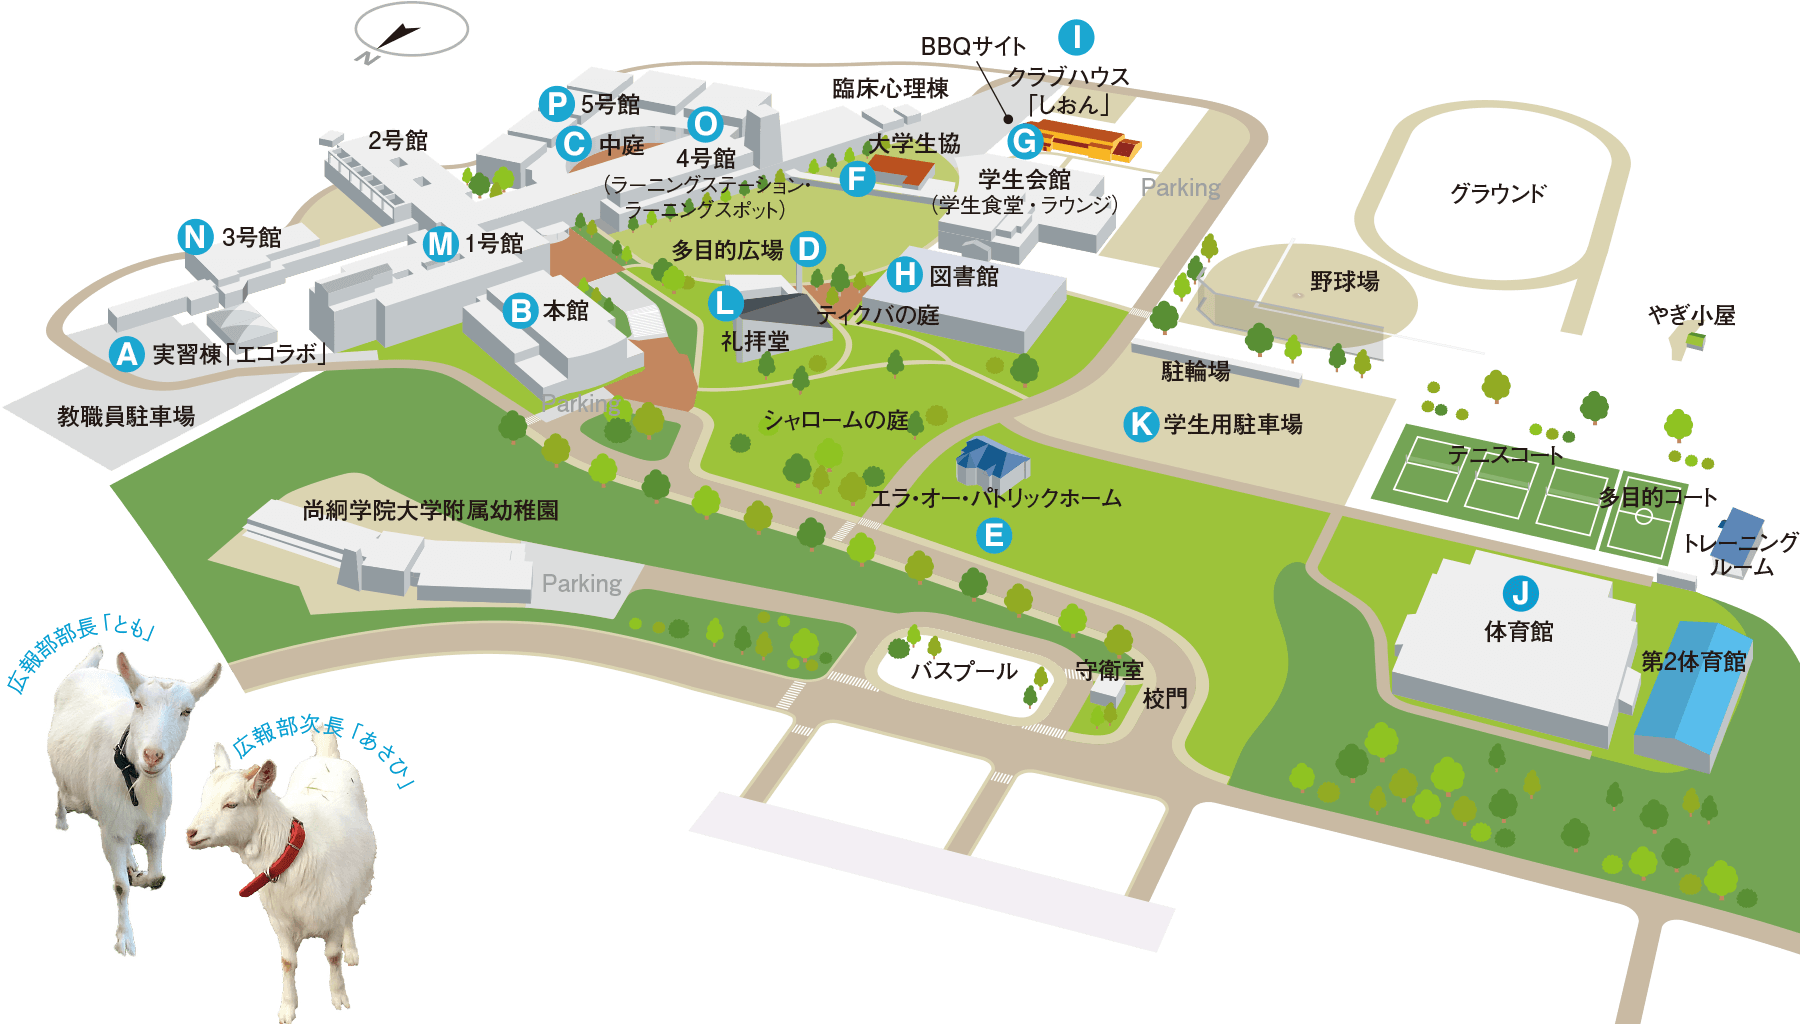 尚絅学院大学キャンパスマップ